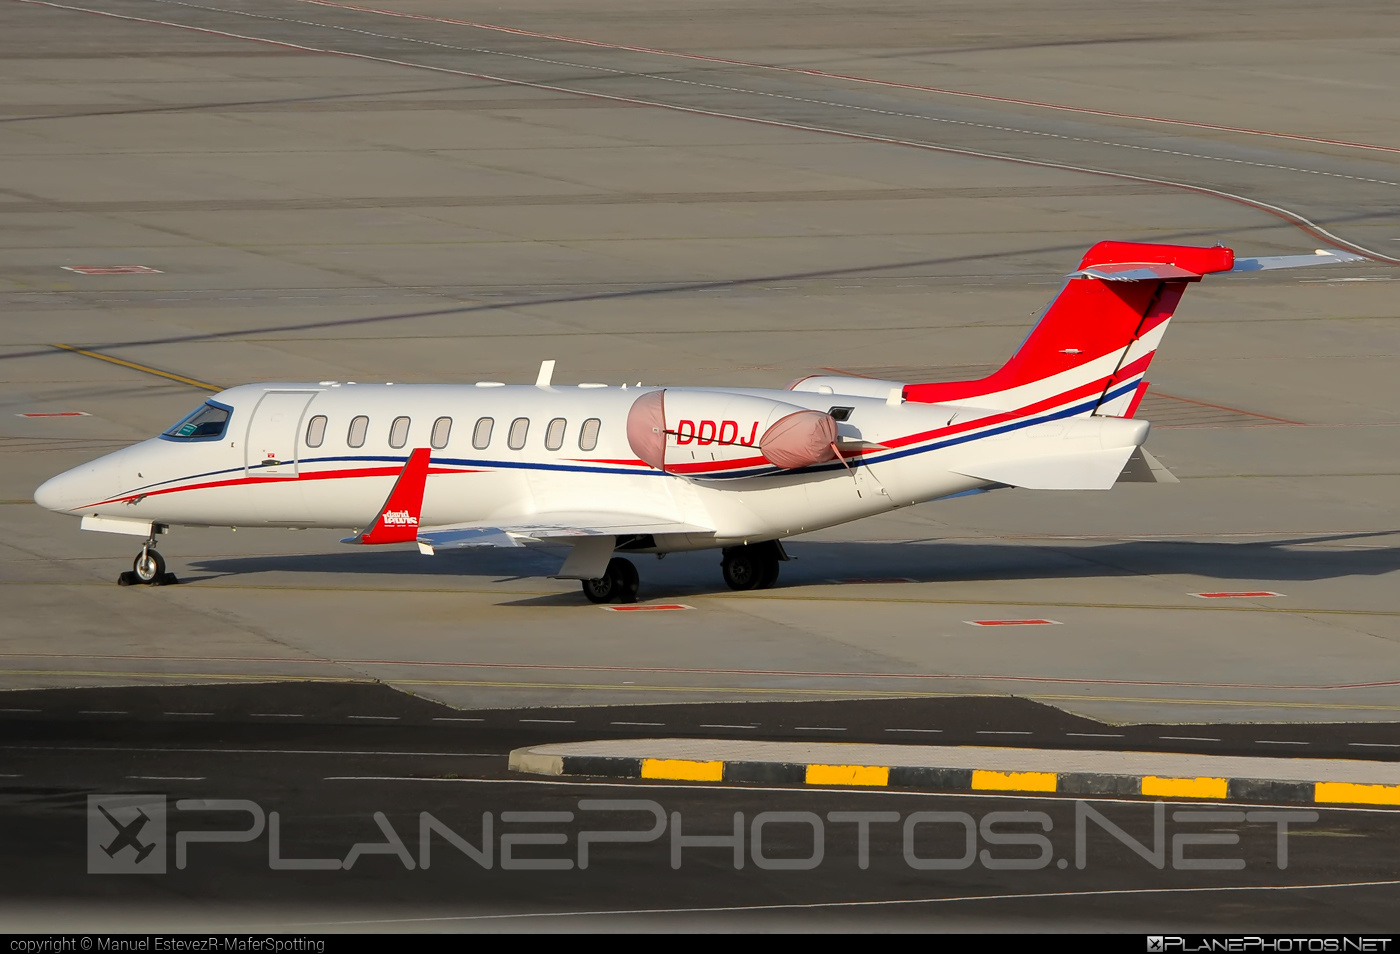 Bombardier Learjet 45 - G-DDDJ operated by Global Flight Solutions #bombardier #learjet #learjet45